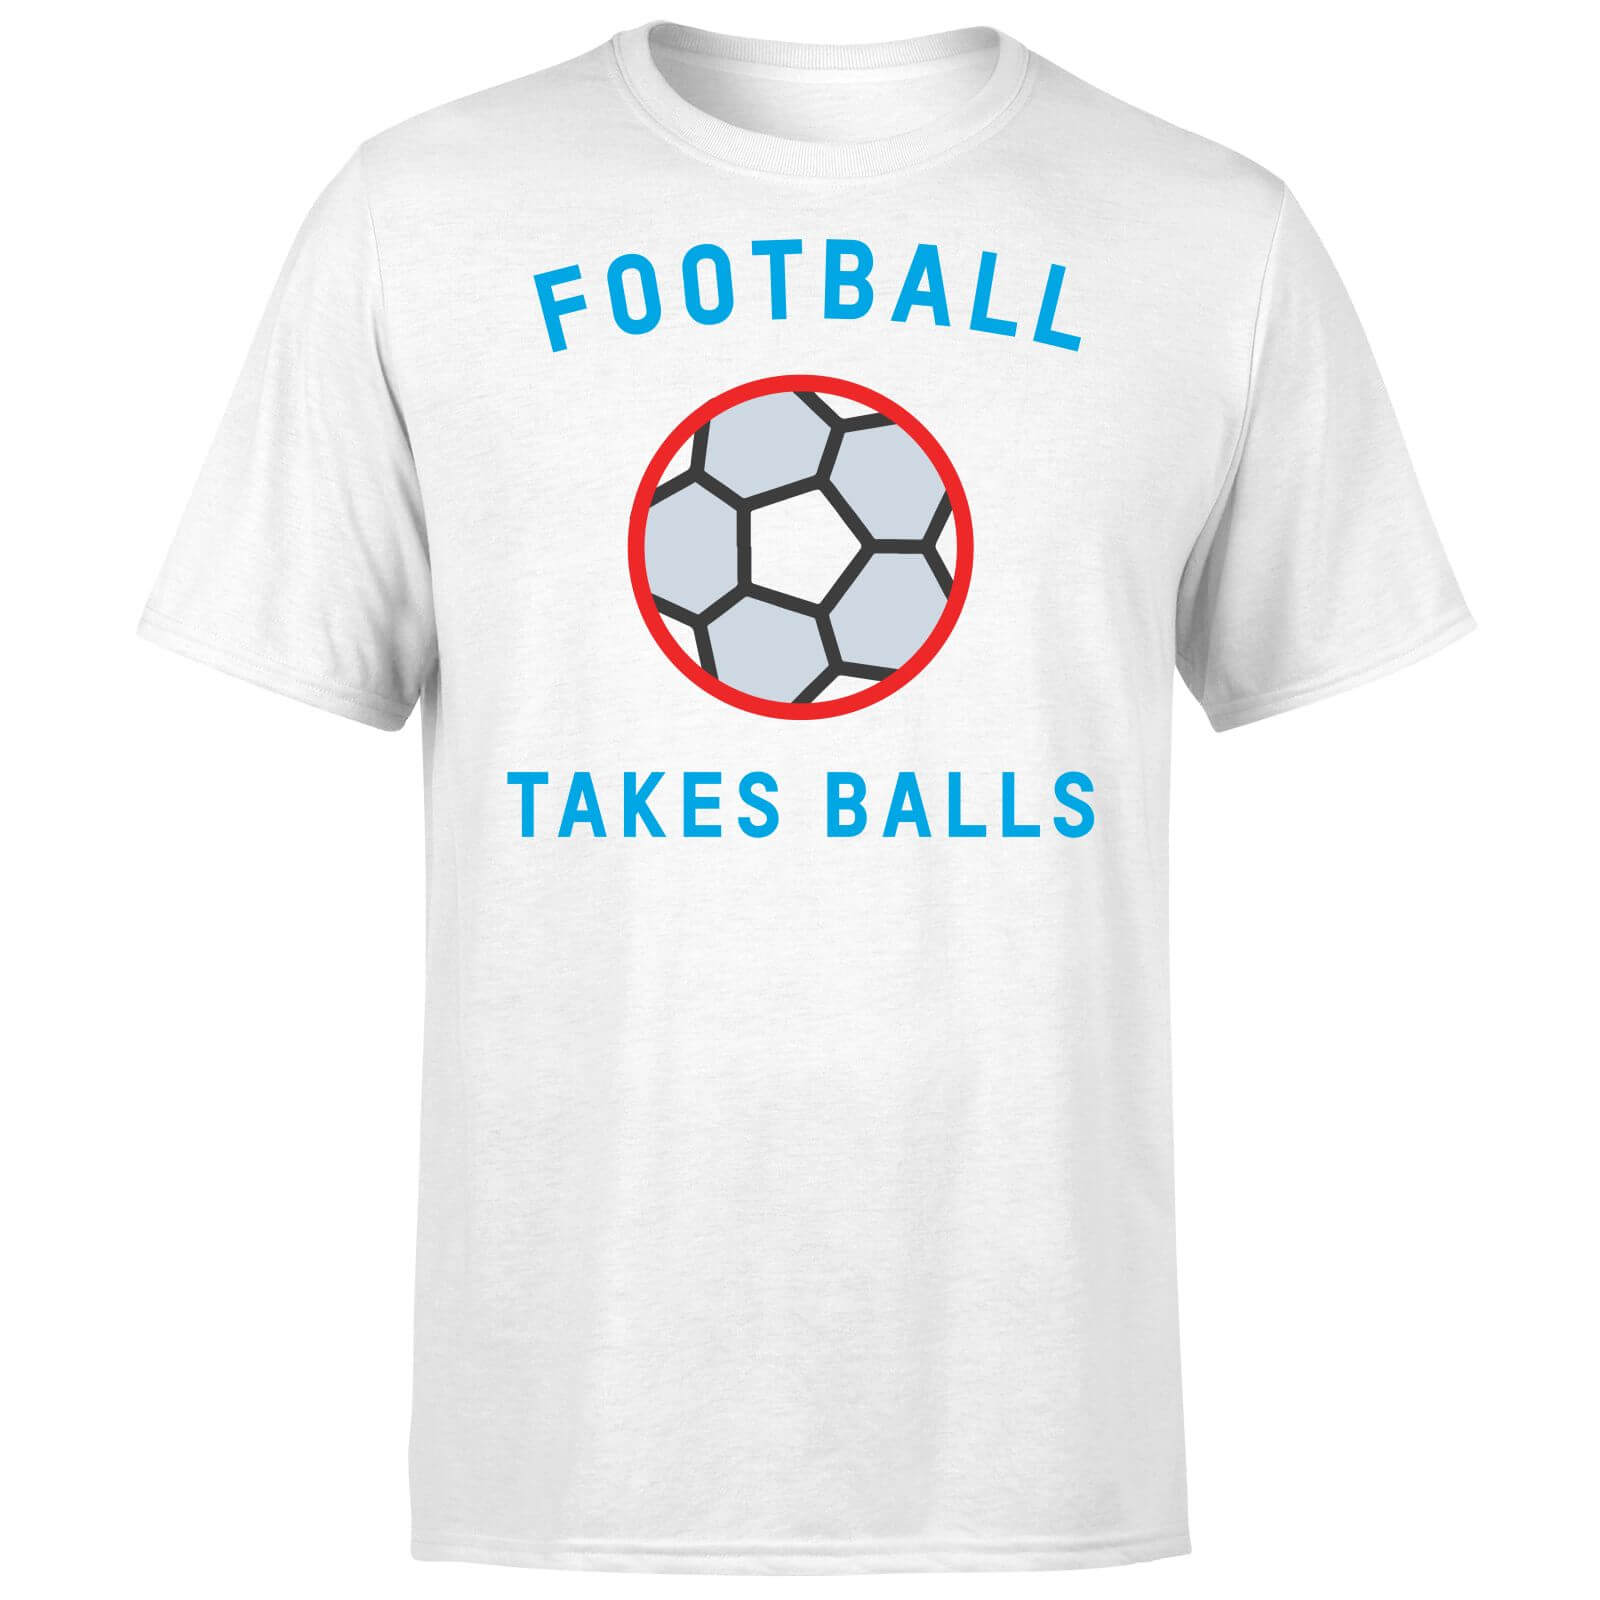 Football Takes Balls T Shirt   White   XXL   White